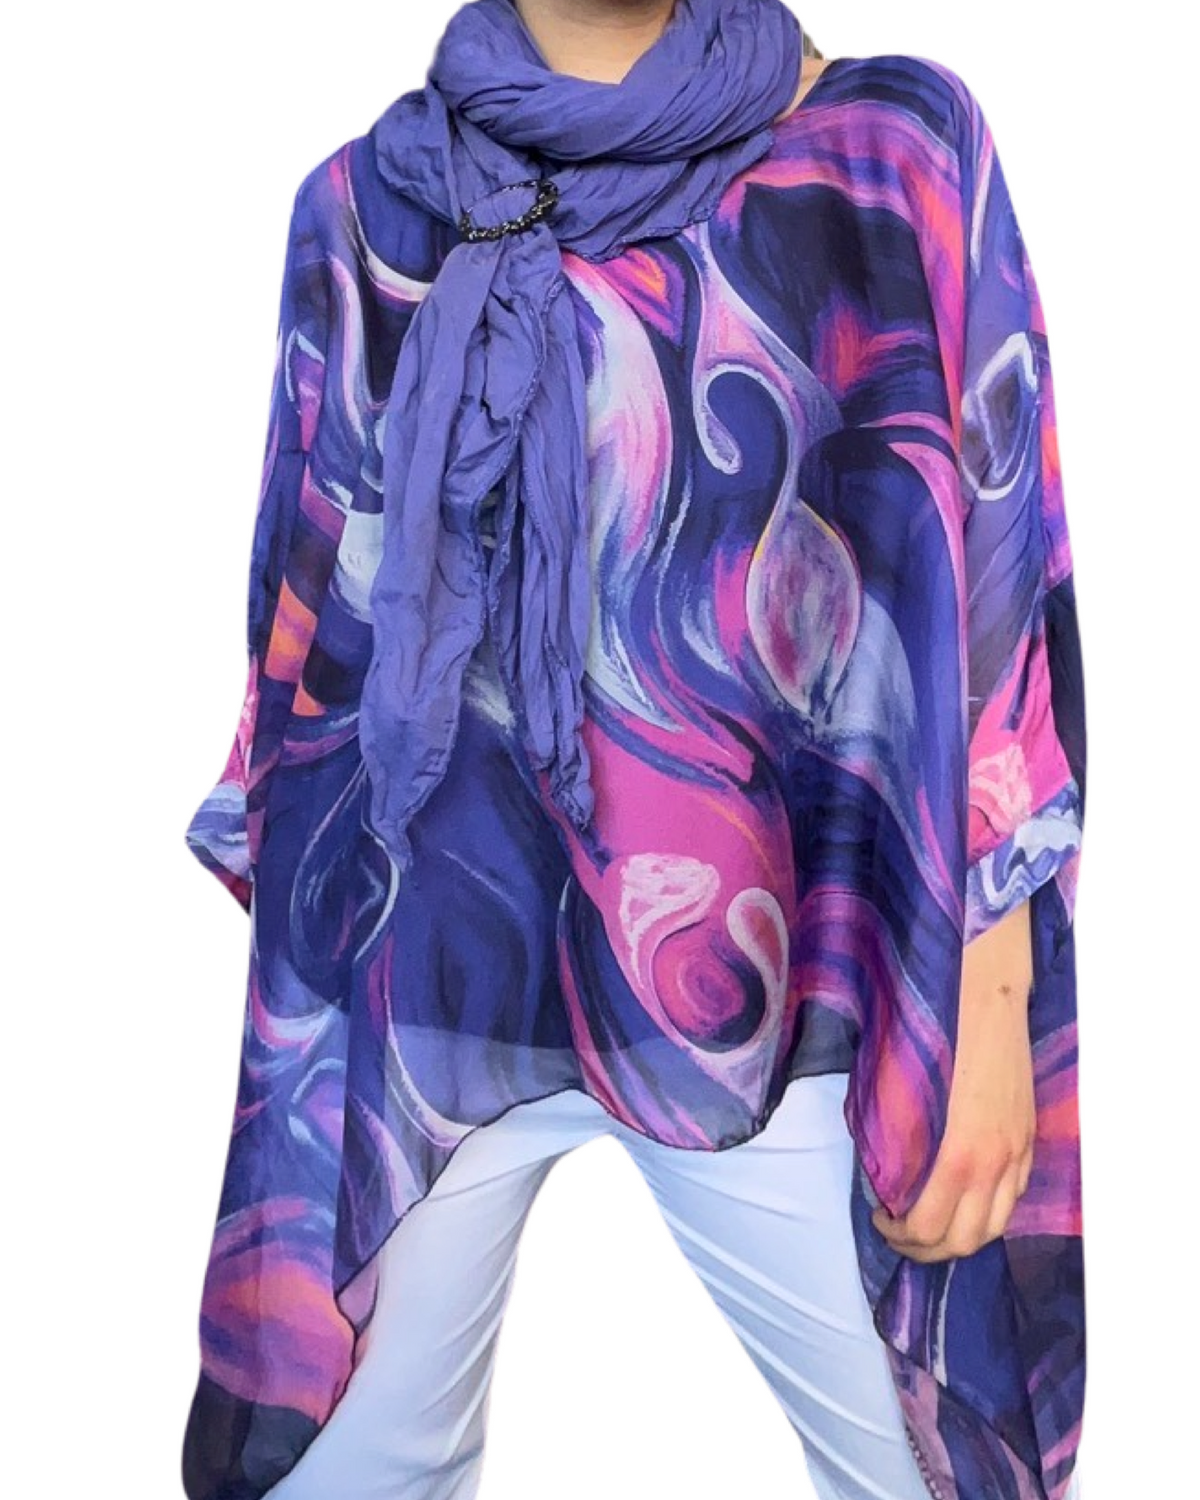 Blouse de soie pour femme avec des motifs abstraits mauves et fuchsia avec foulard et boucle d'ajustement.